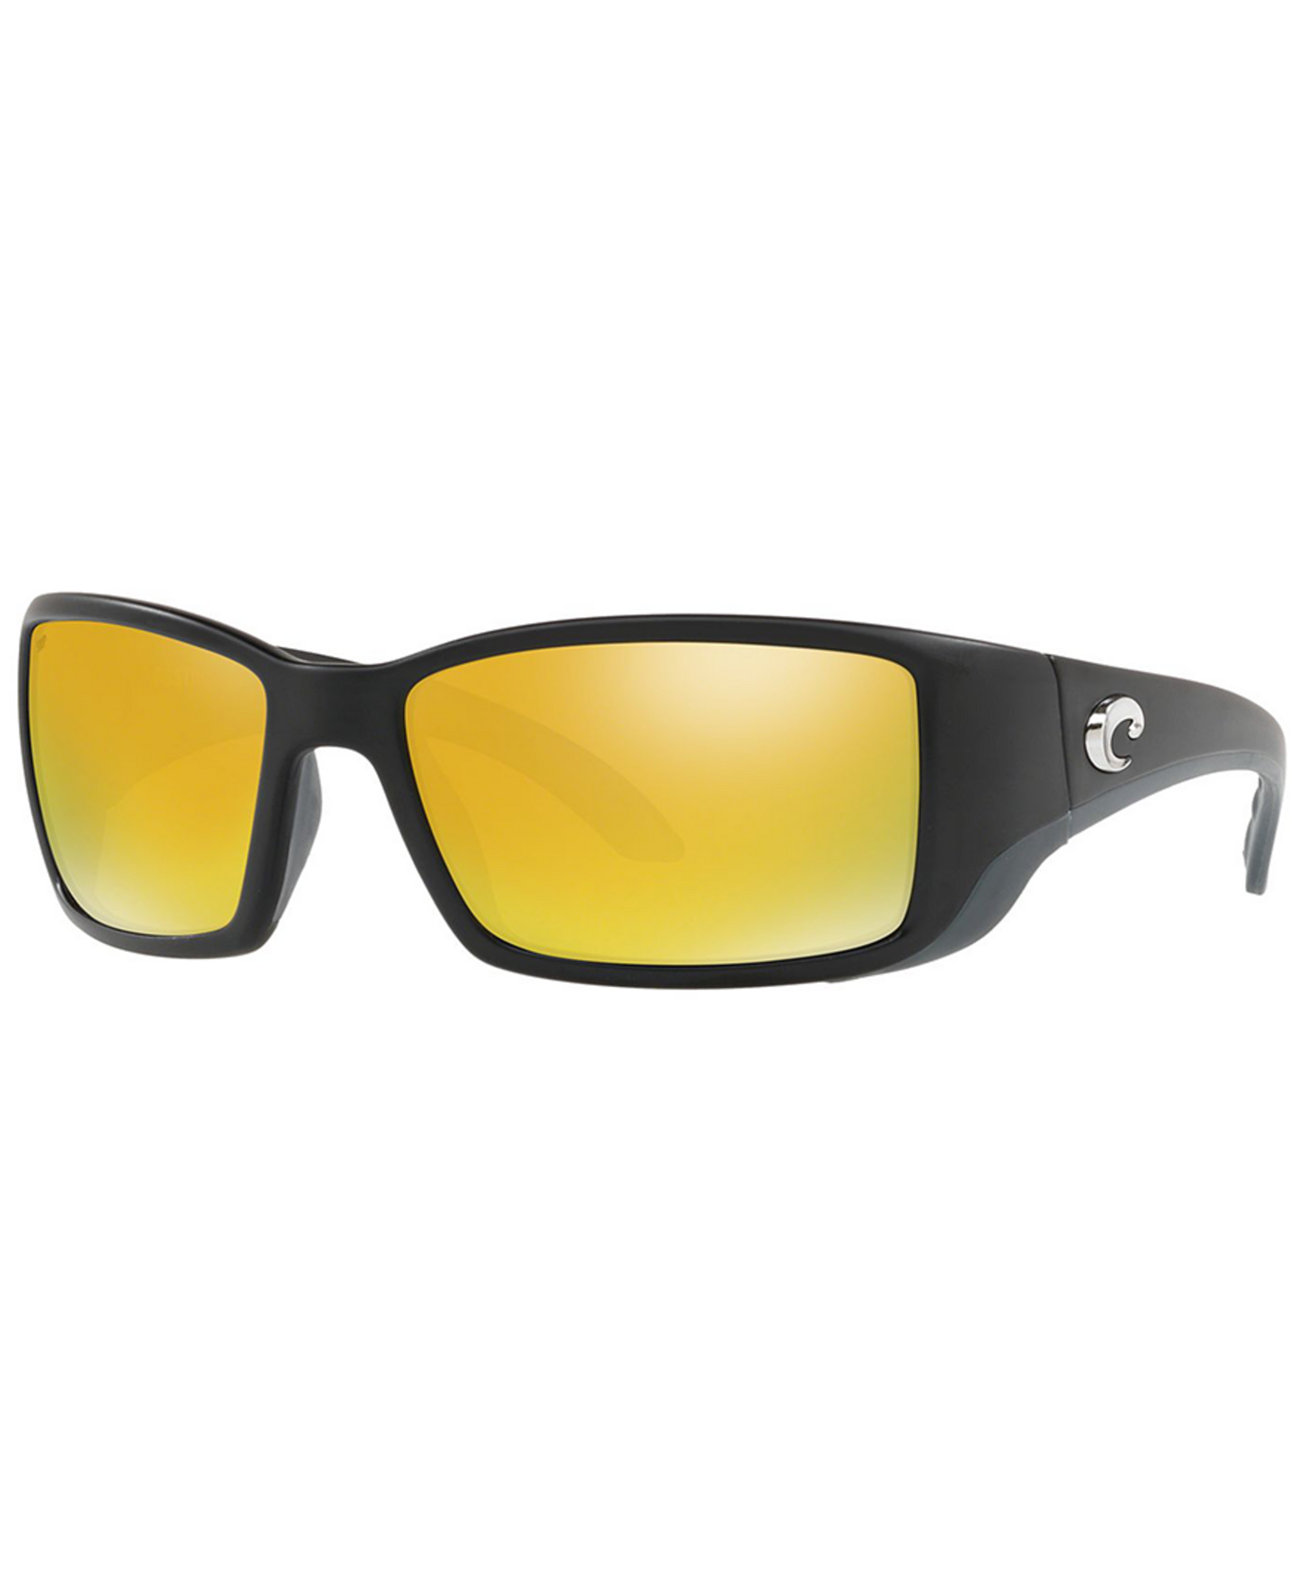 Поляризованные солнцезащитные очки, BLACKFIN 62 COSTA DEL MAR